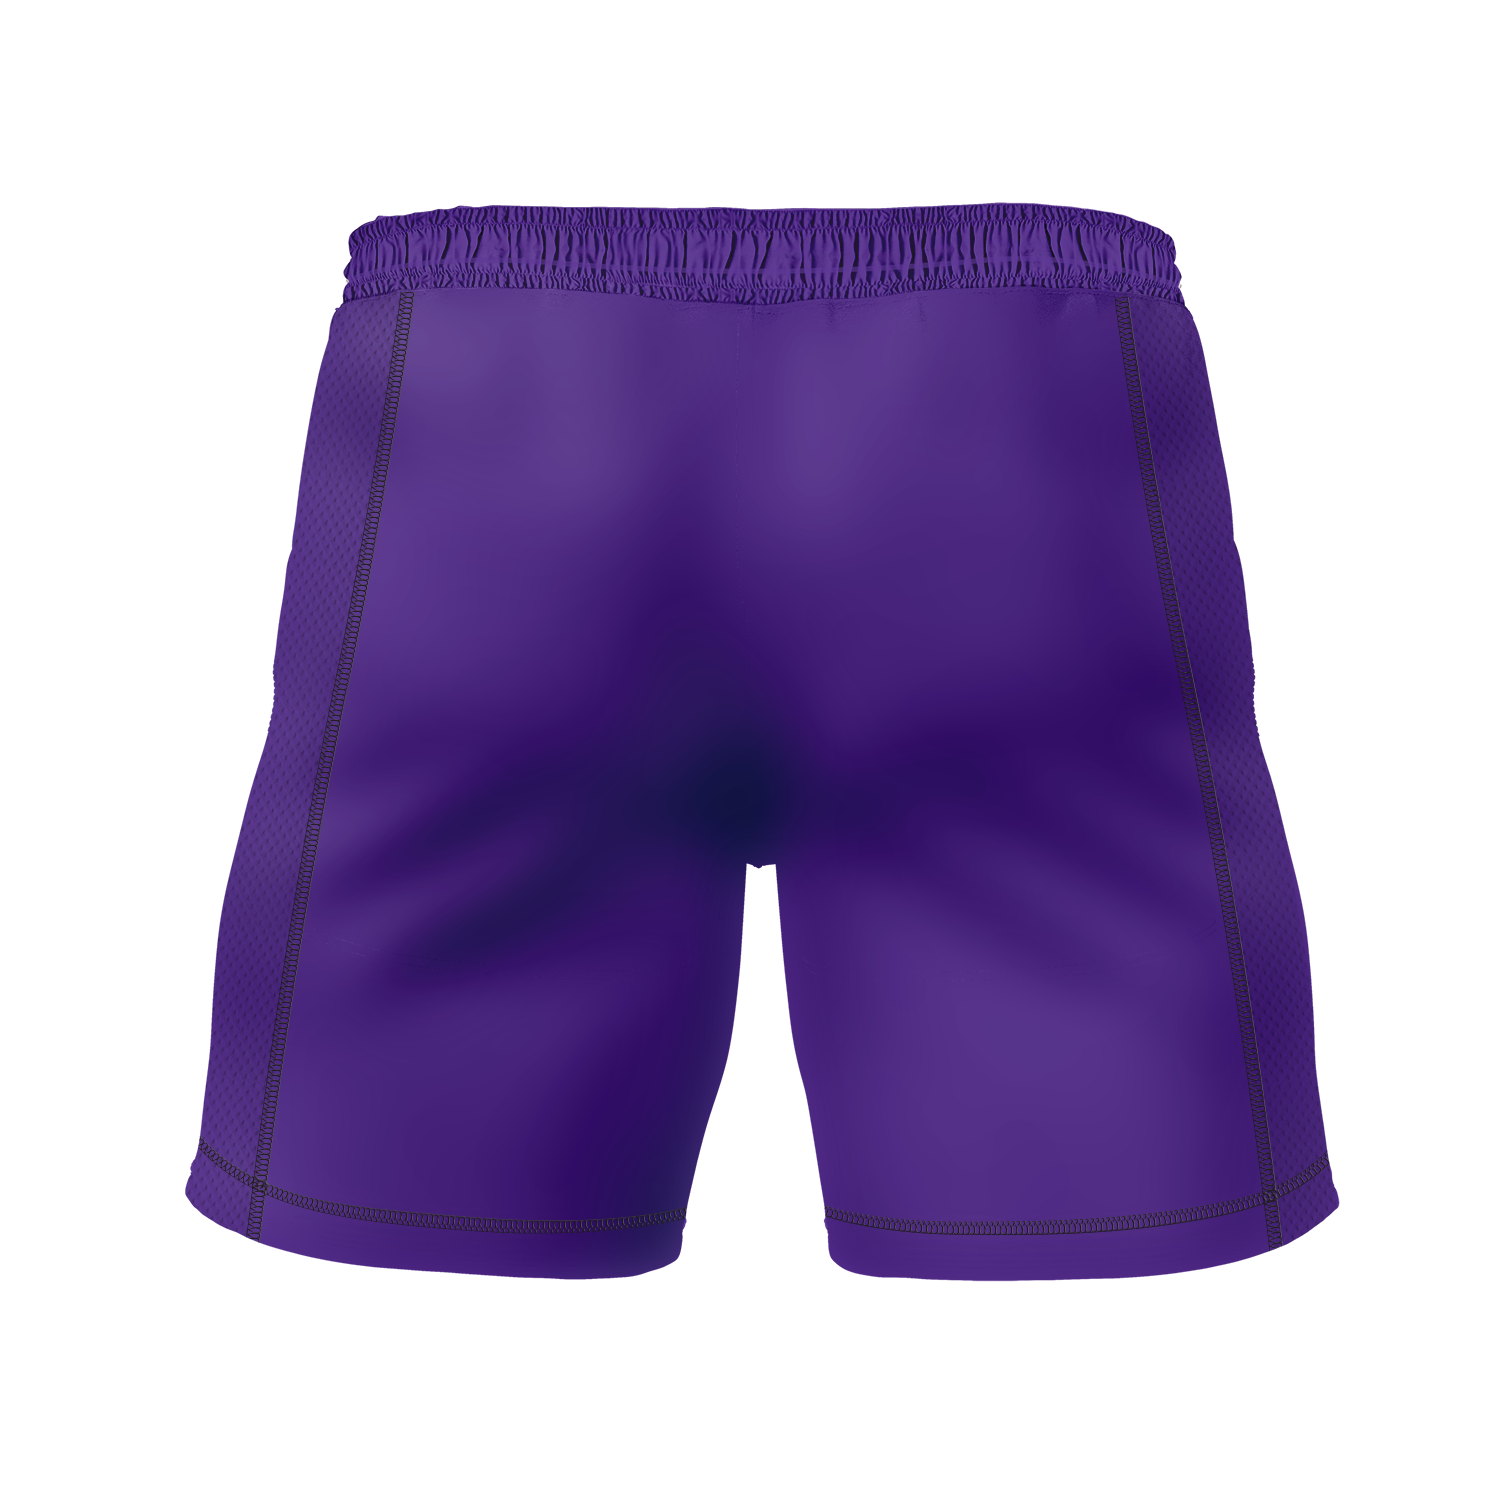 Tsunami JJ men's 7" fight shorts Ranked, purple